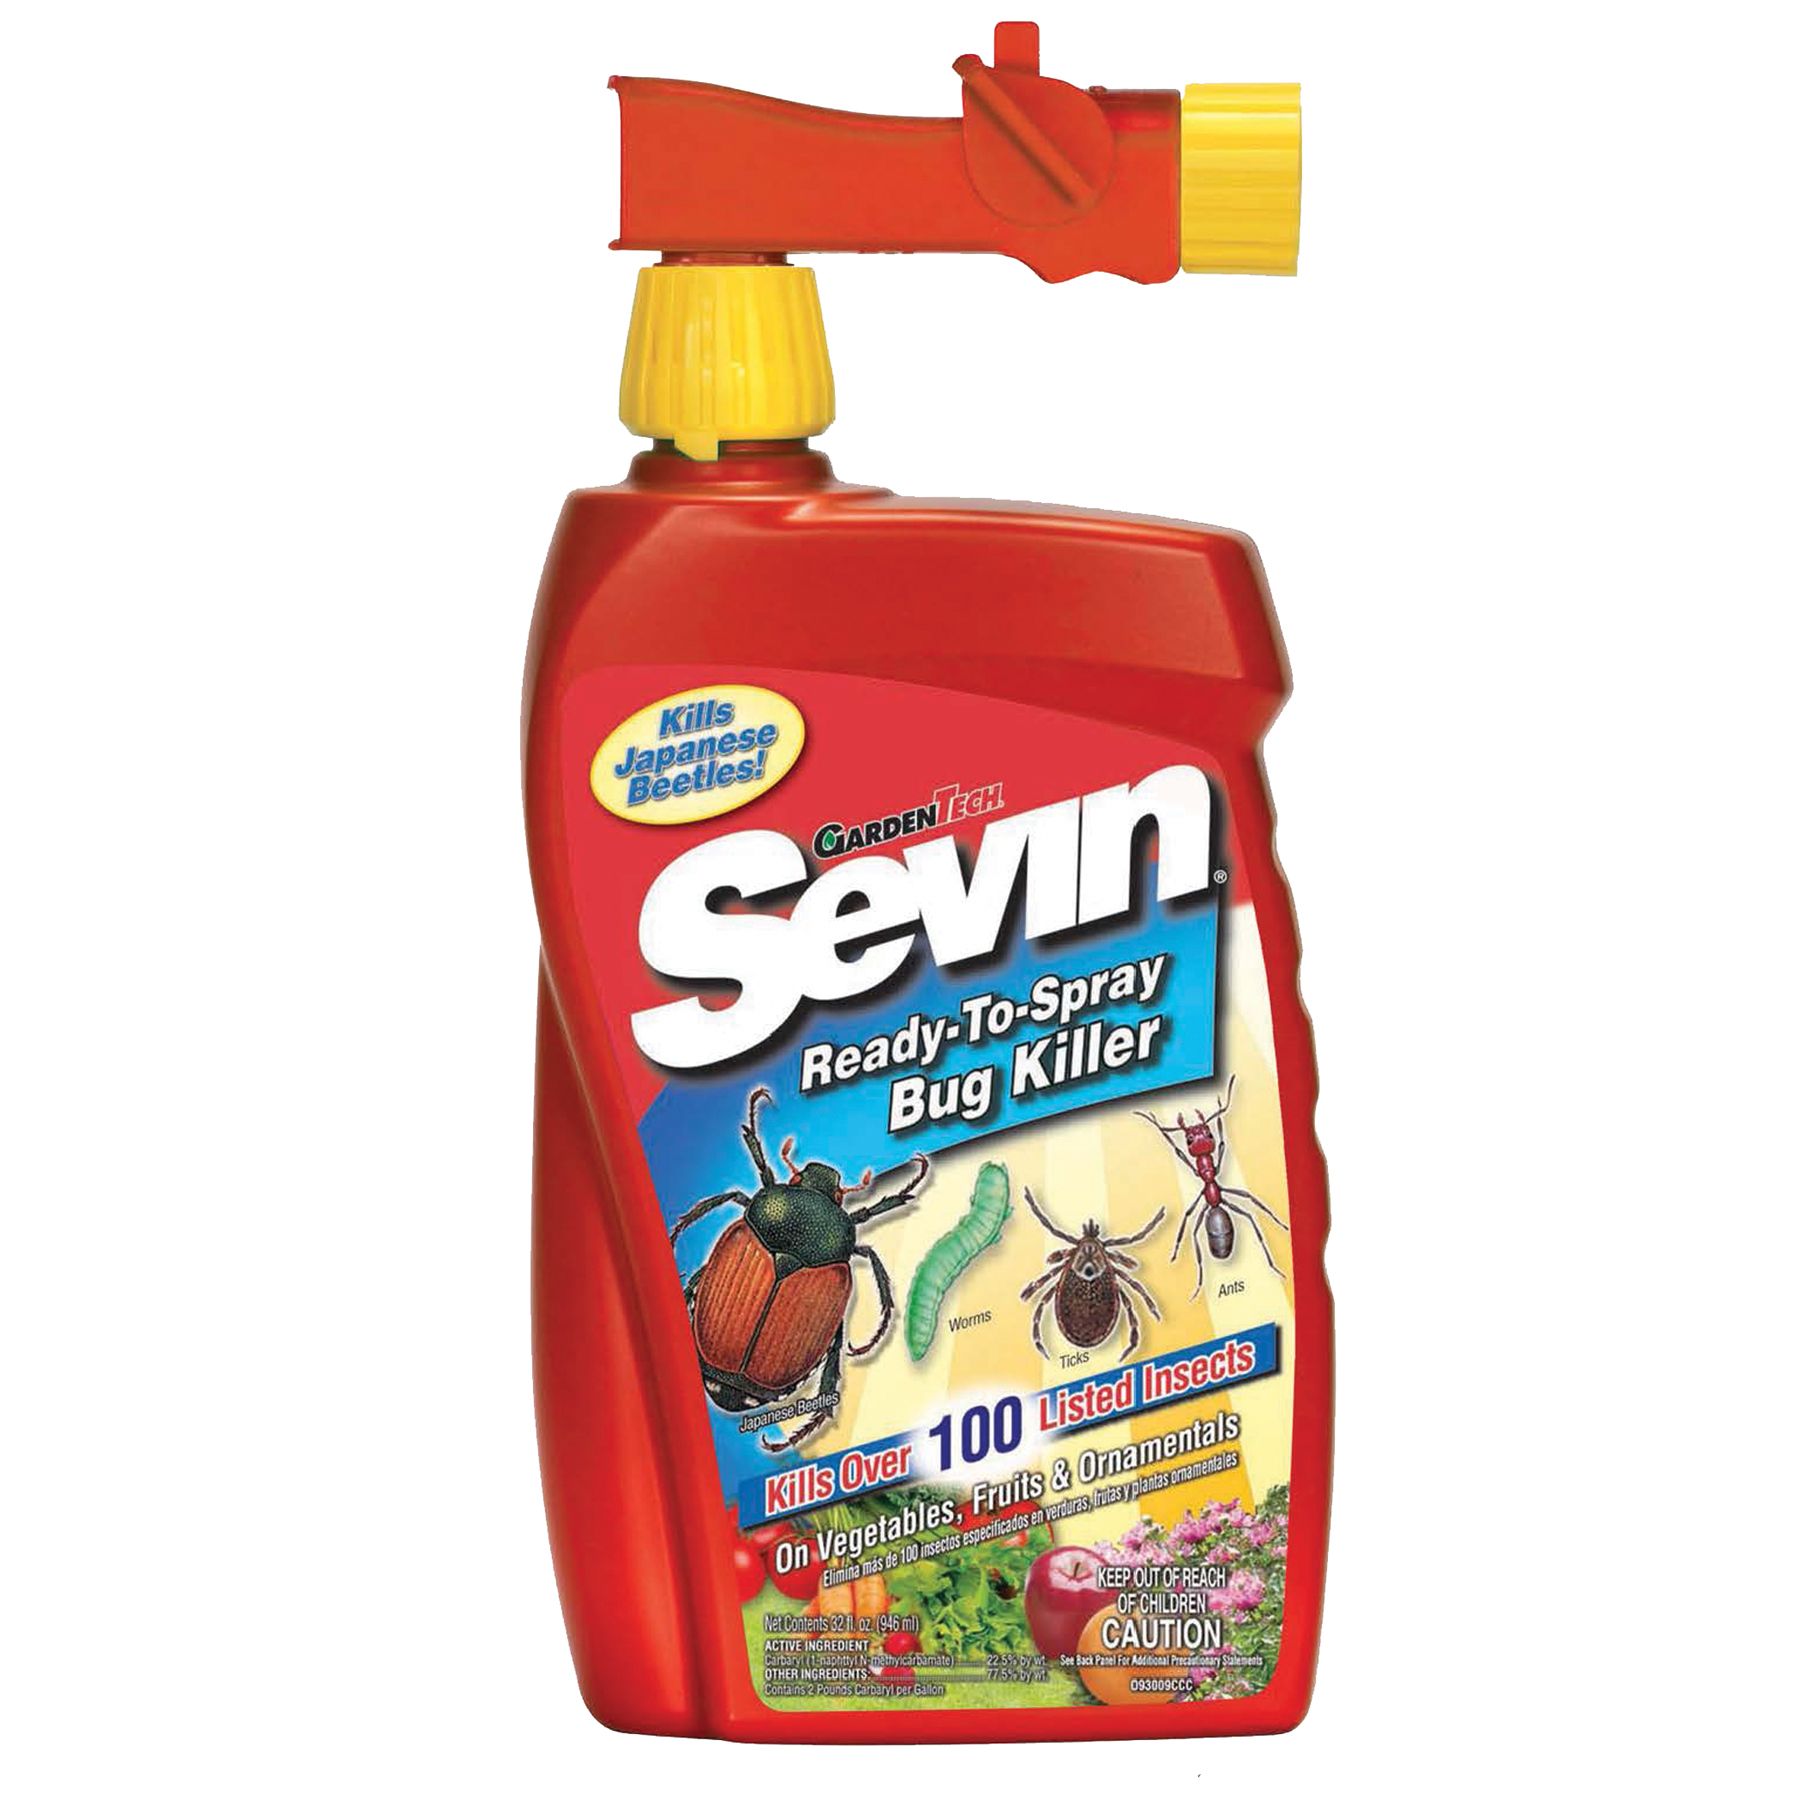 Gardentech Sevin Ready-to-spray Bug Killer Qc Supply